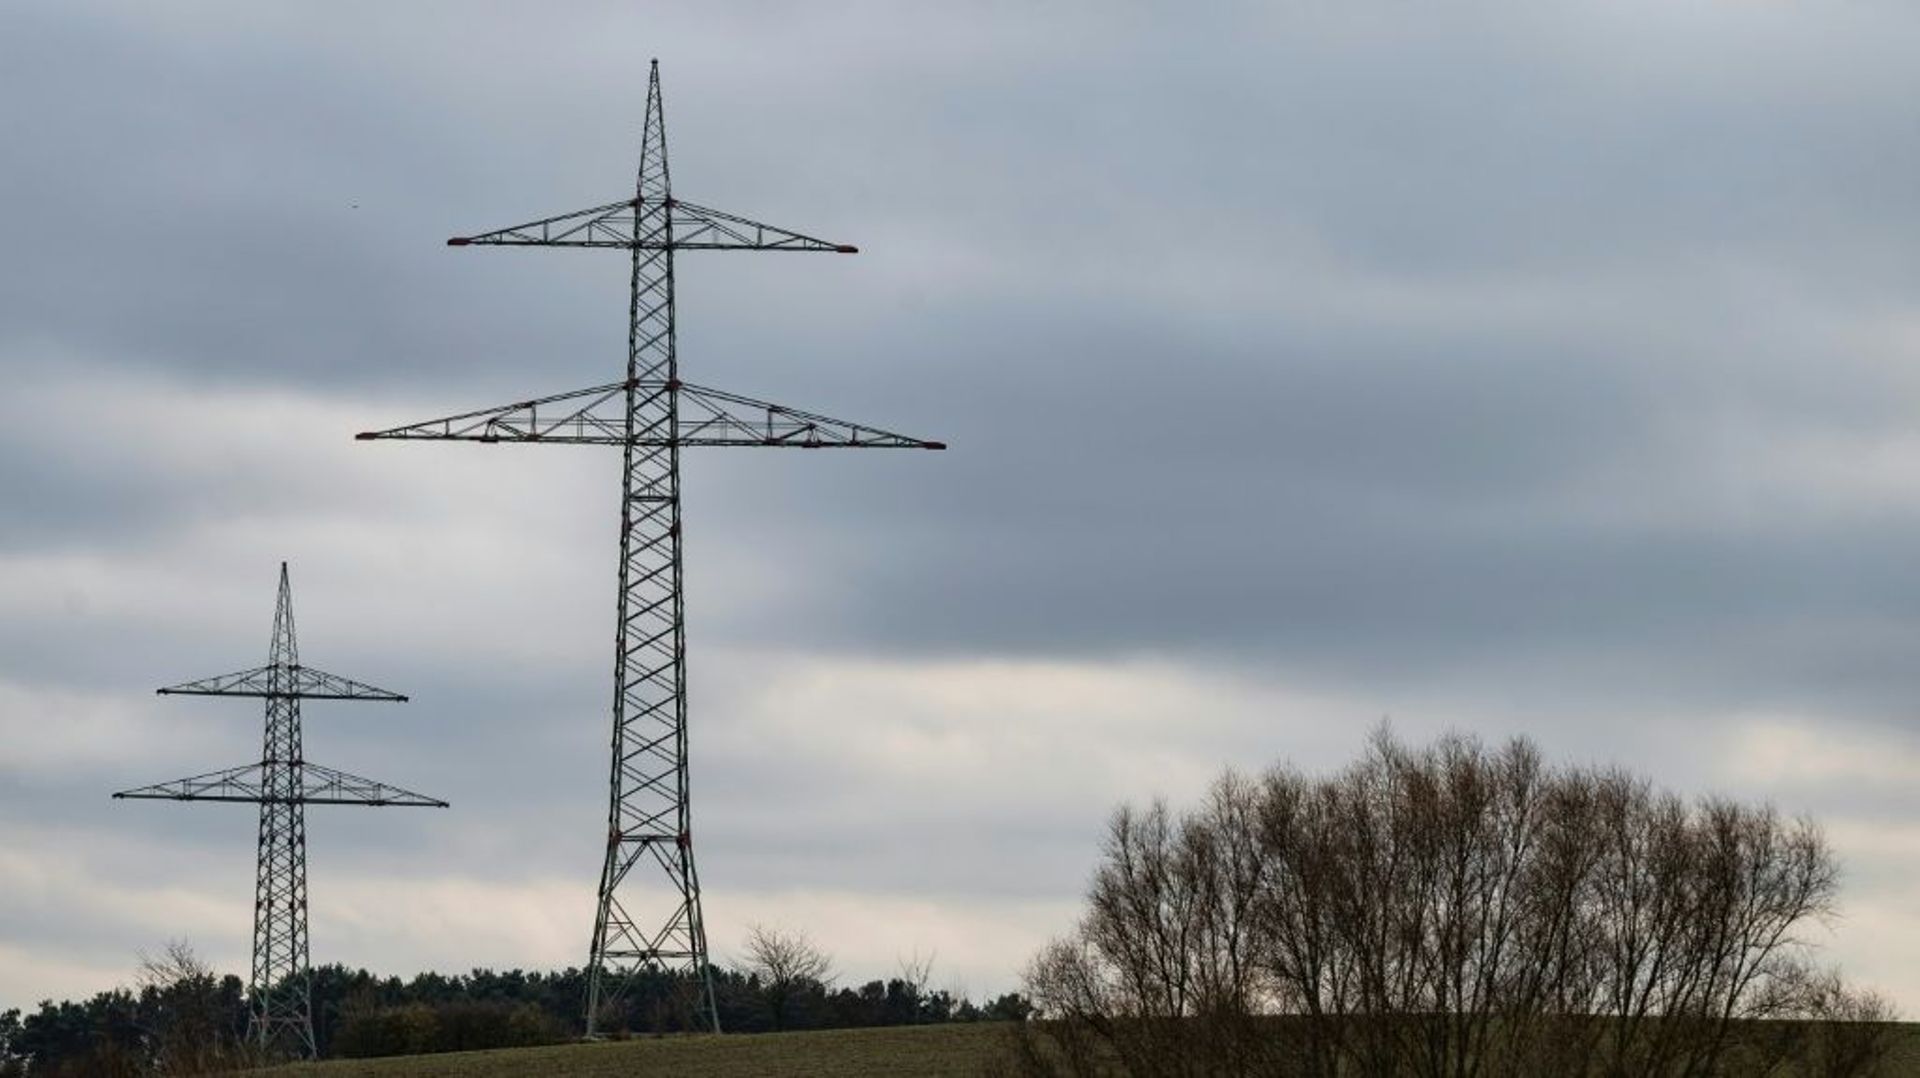 Des pylônes électriques pour des lignes de 380 kV (pas encore installées), près de Golzow, le 3 décembre 2021 en Allemagne